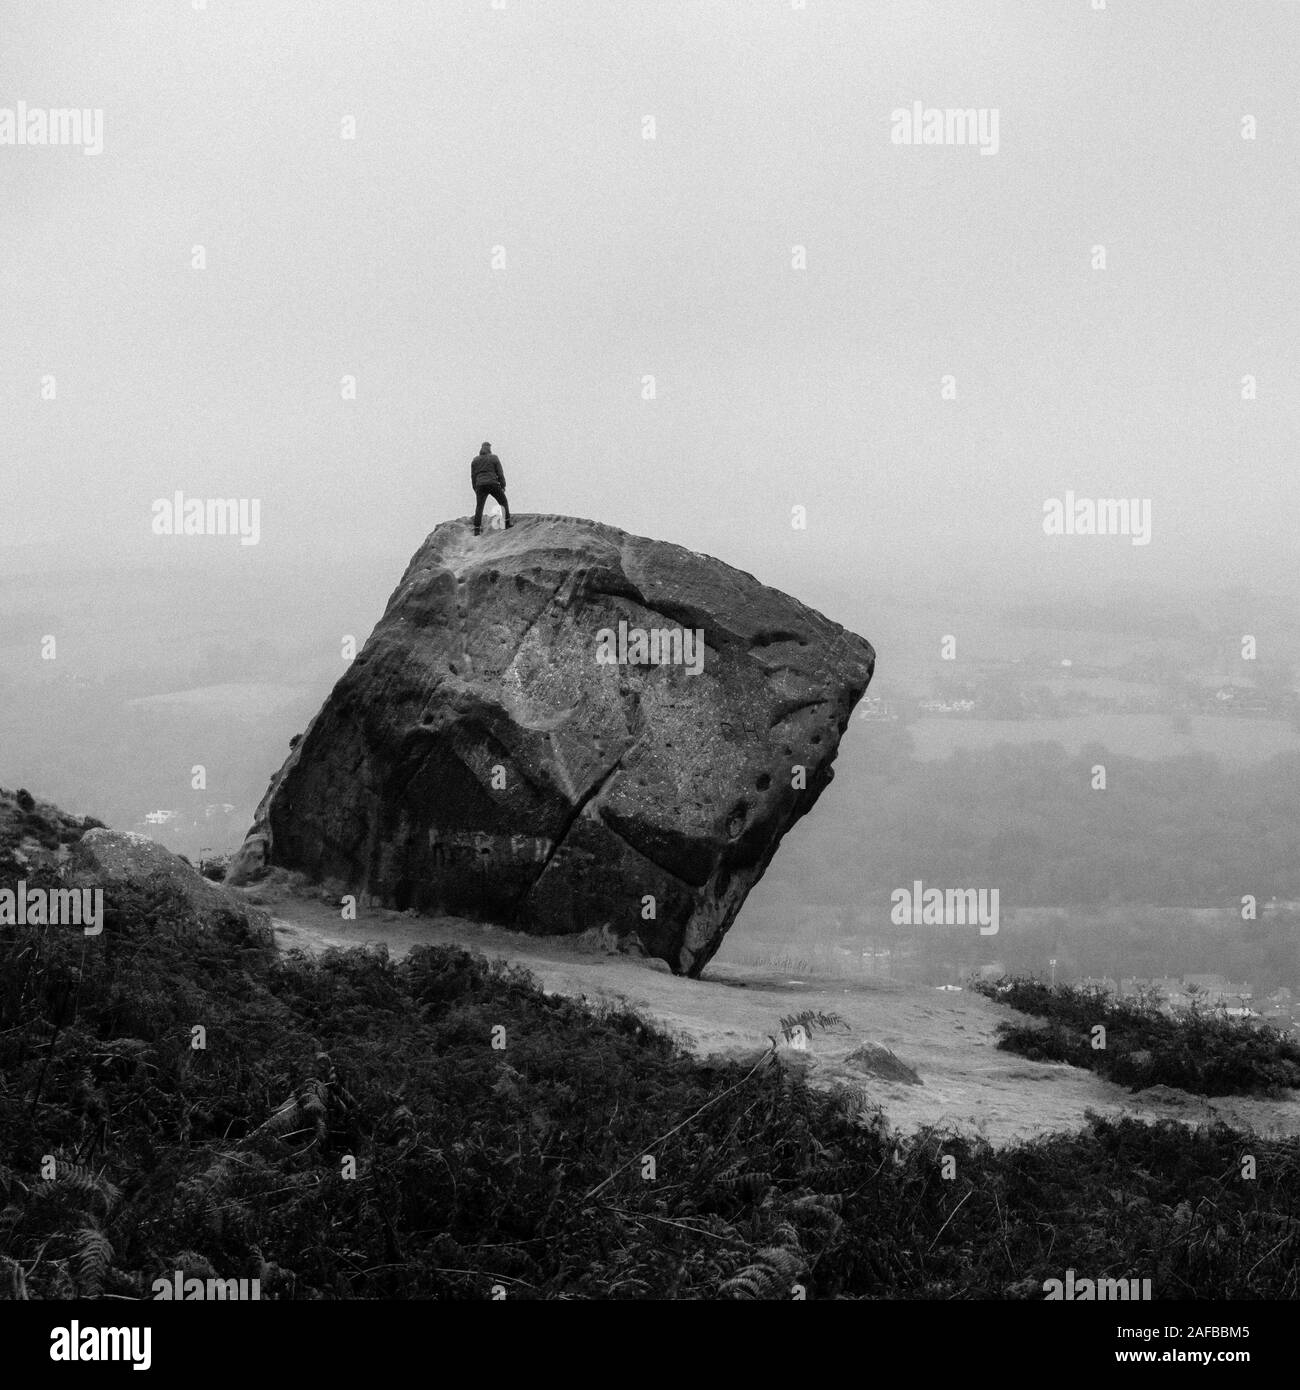 Une personne se trouve sur le dessus du mollet (de la vache et du veau Rocks sur Ilkley Moor) et admire la vue, Ilkley, West Yorkshire, Royaume-Uni Banque D'Images